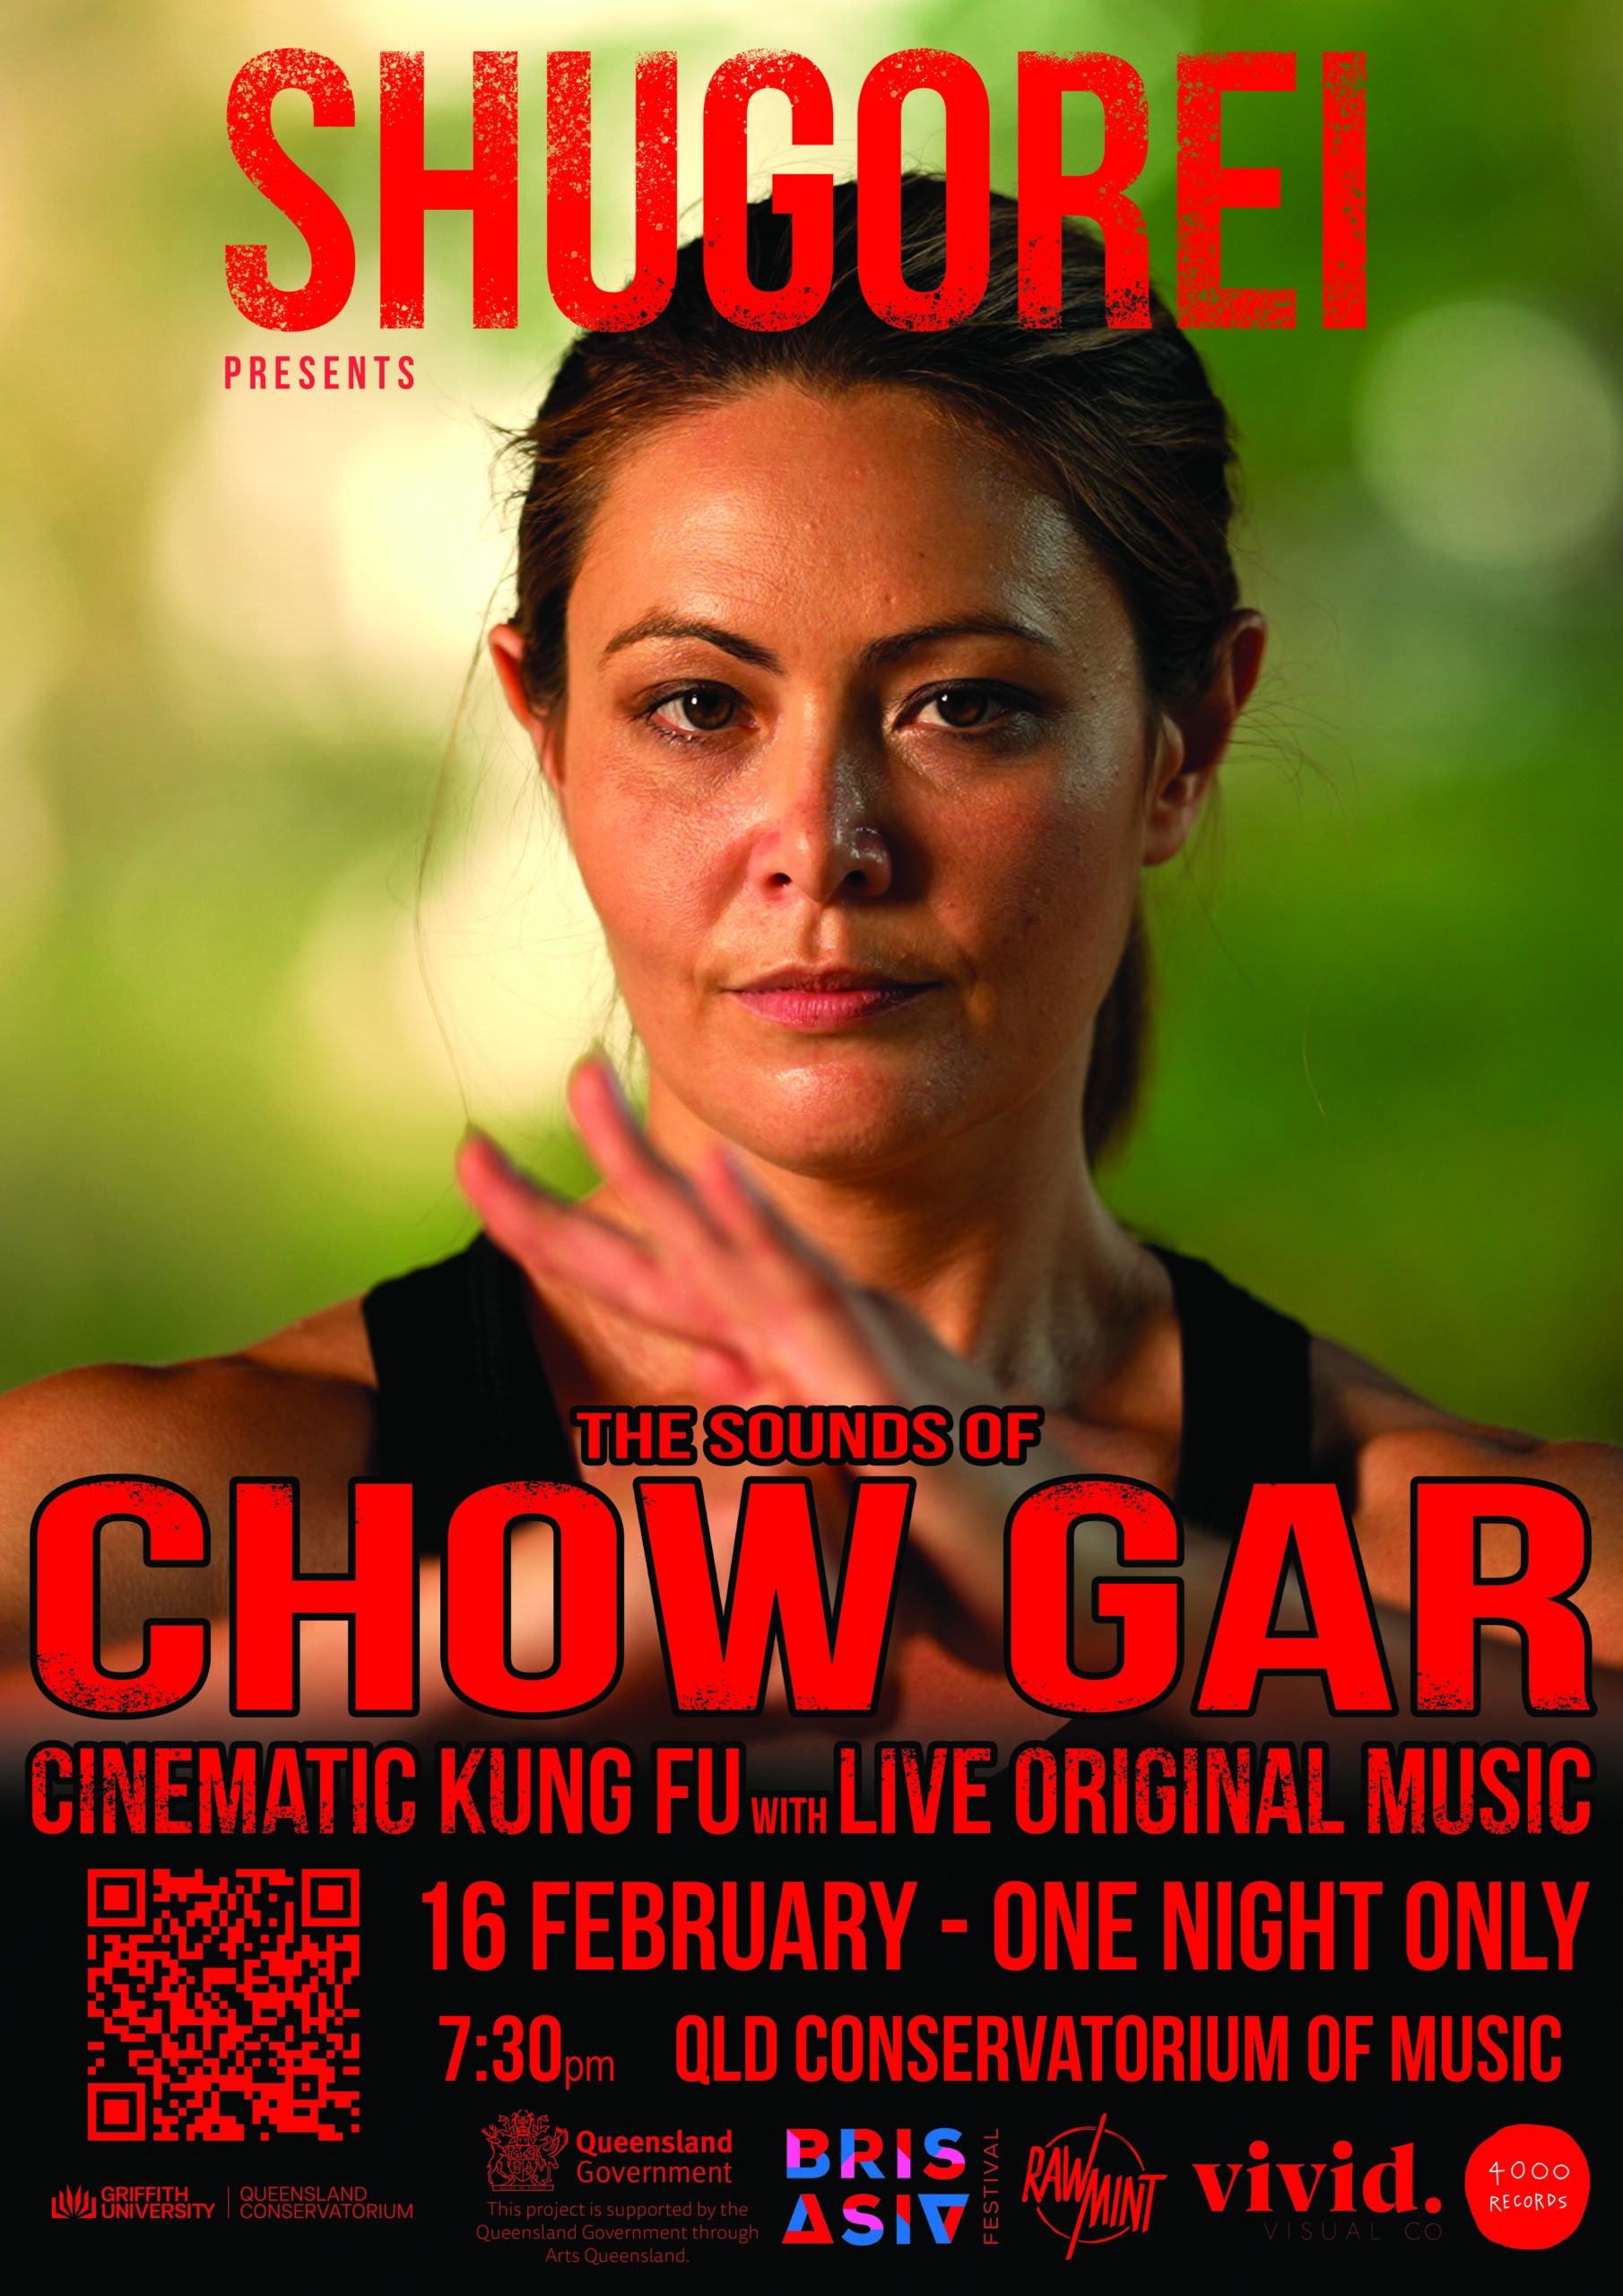 Sounds of Chow Gar